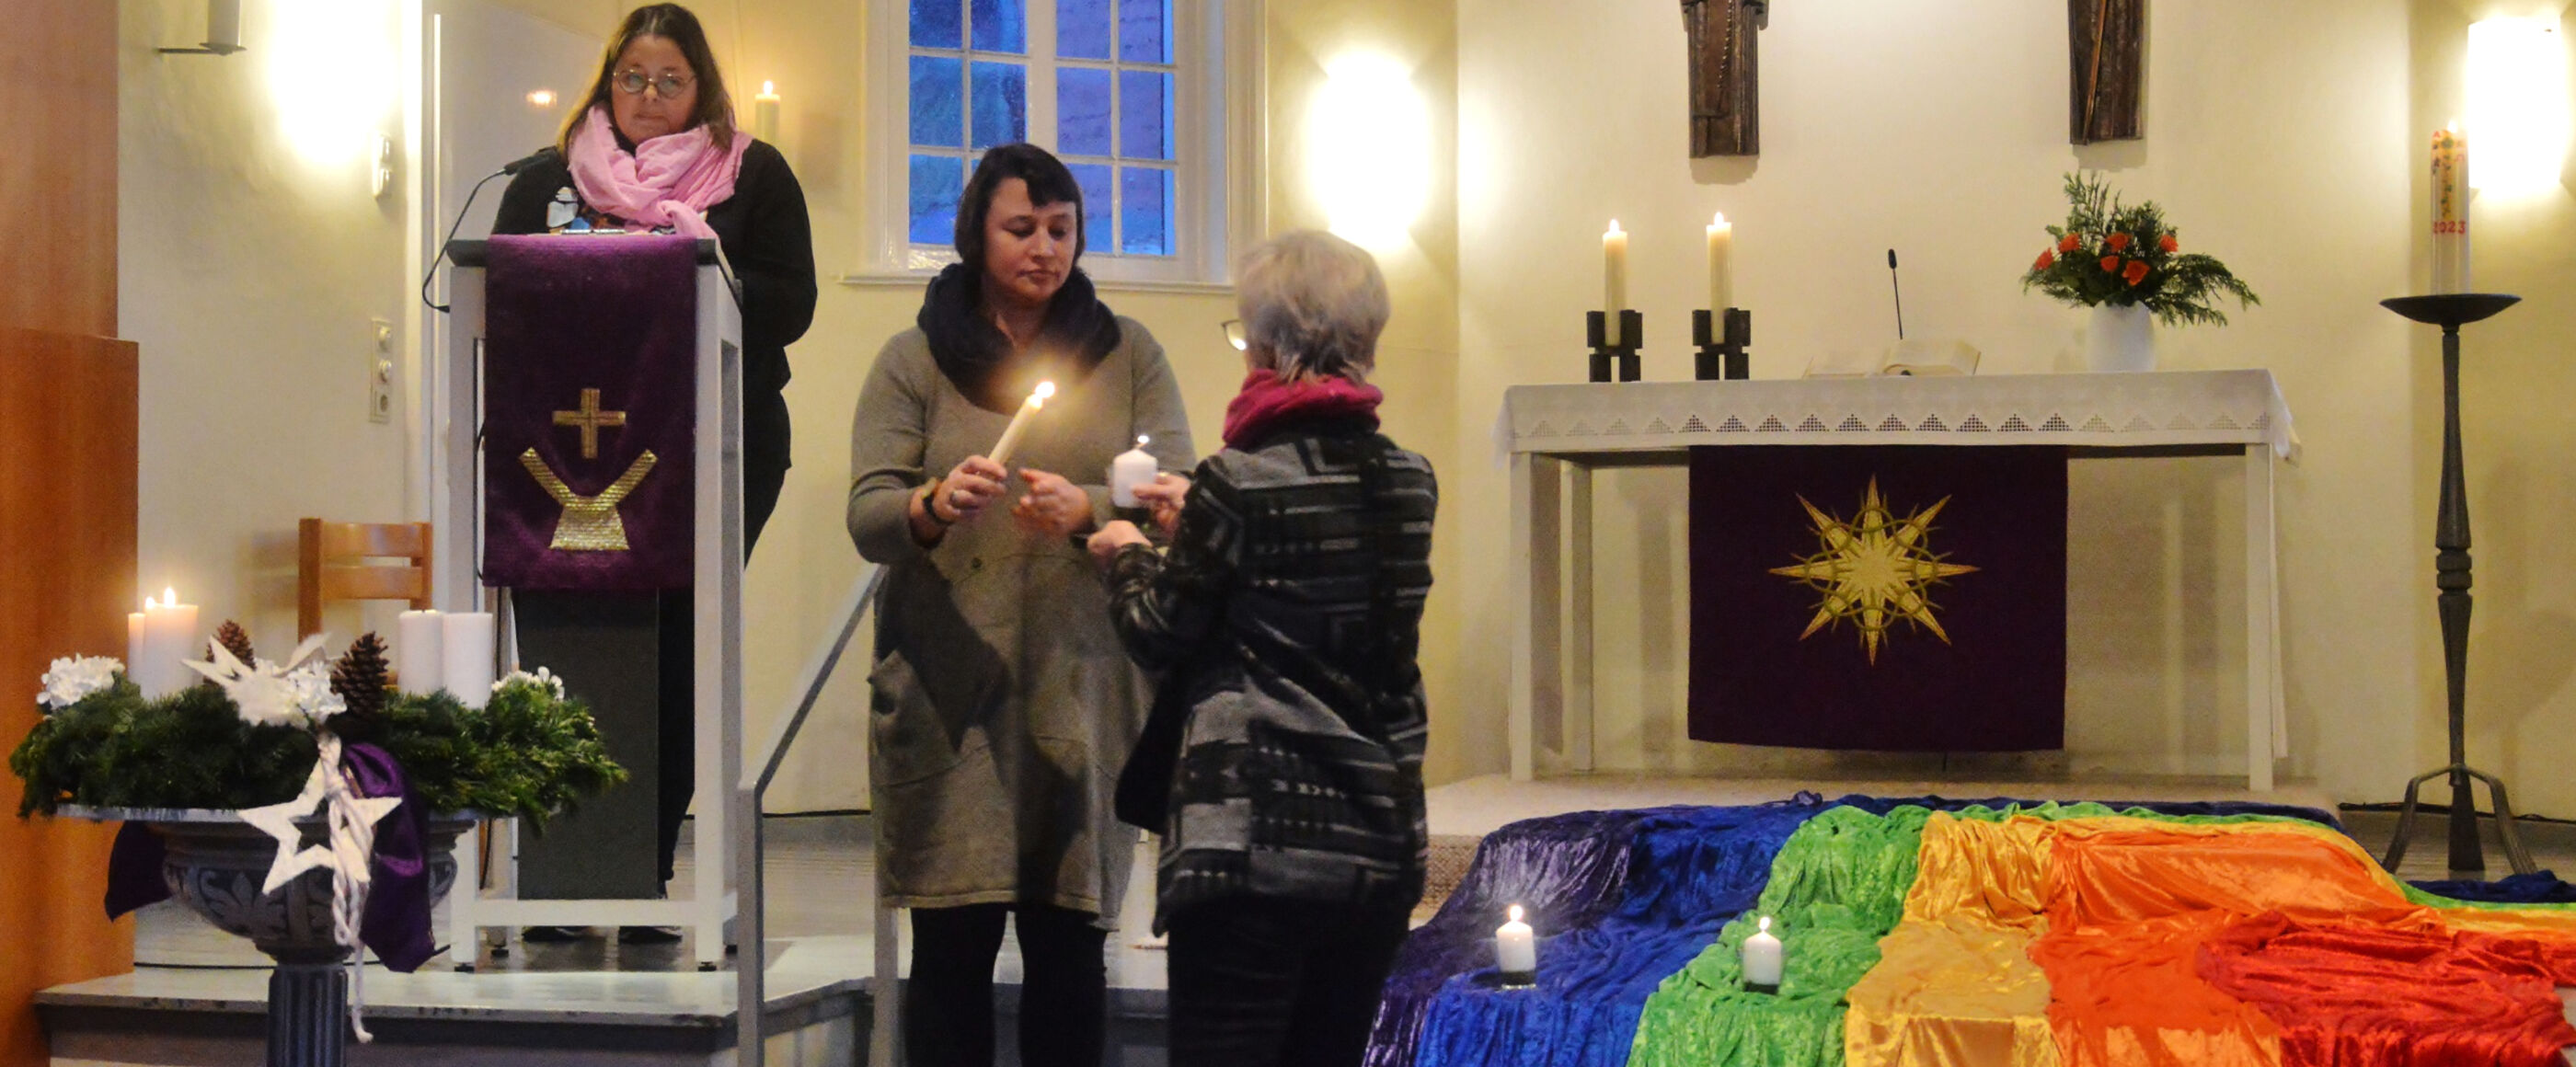 drei Frauen stehen bei einem Kirchenaltar und entzünden eine Kerze.